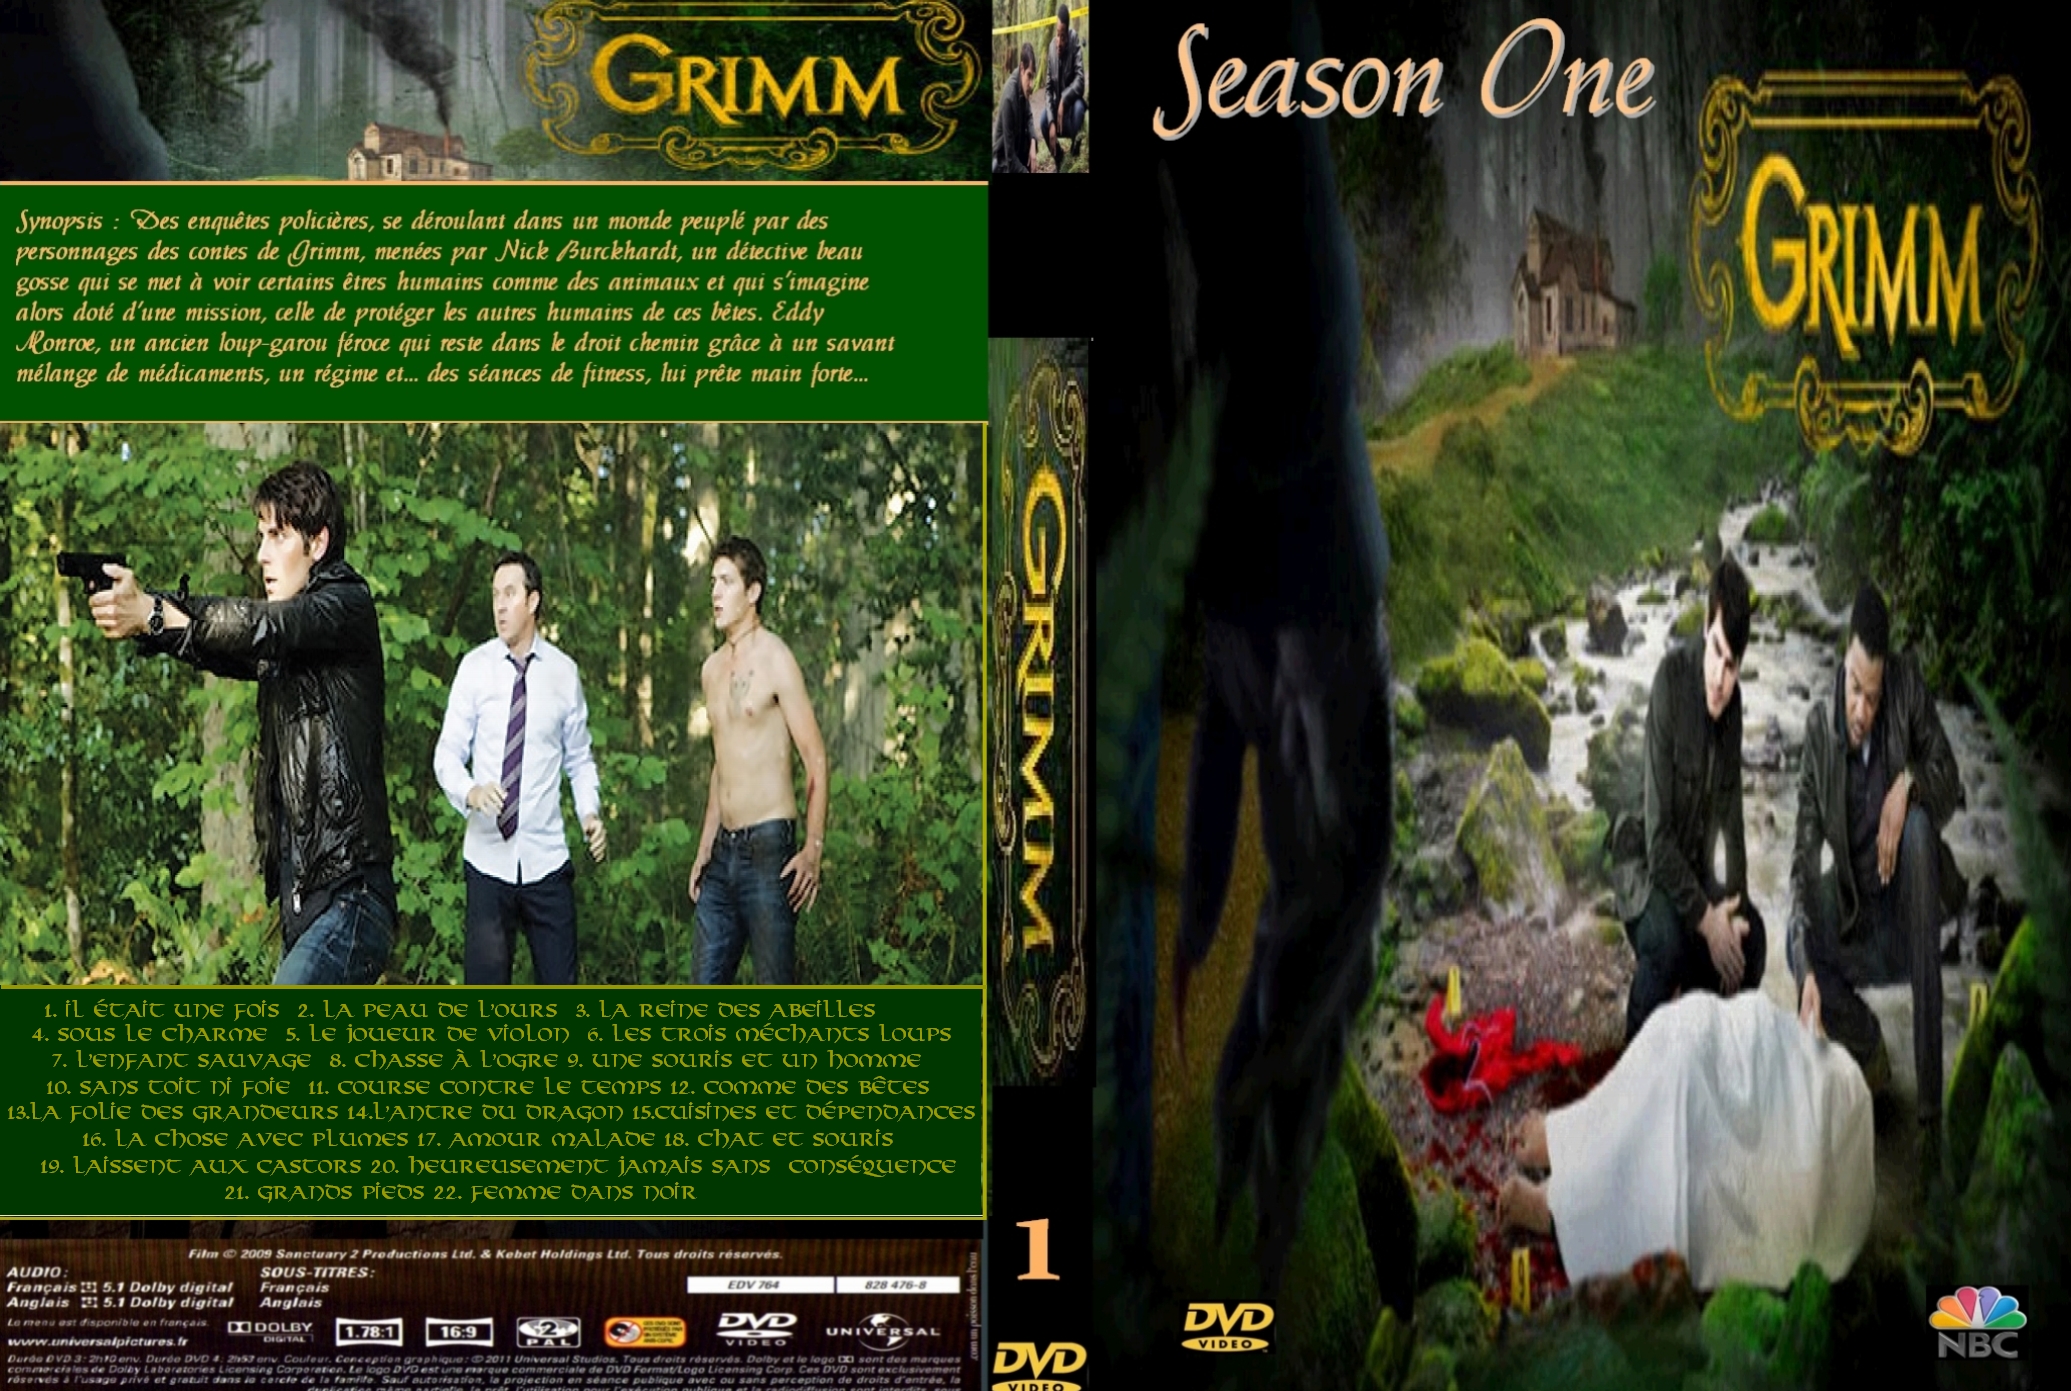 Jaquette DVD Grimm saison 1 custom